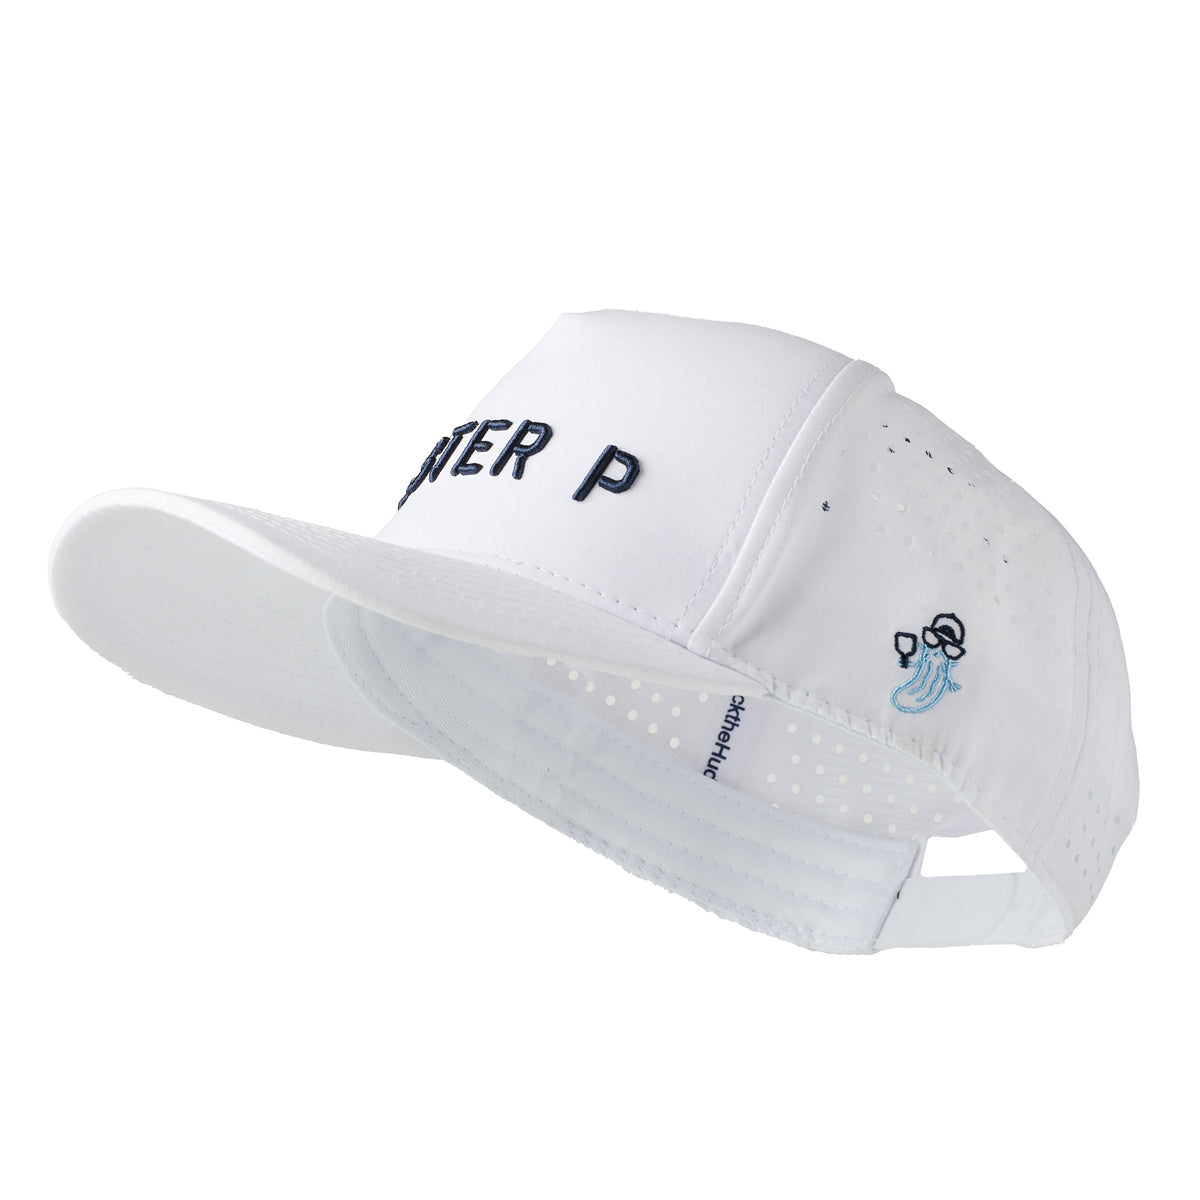 MISTER P Performance Hat (White/Navy)